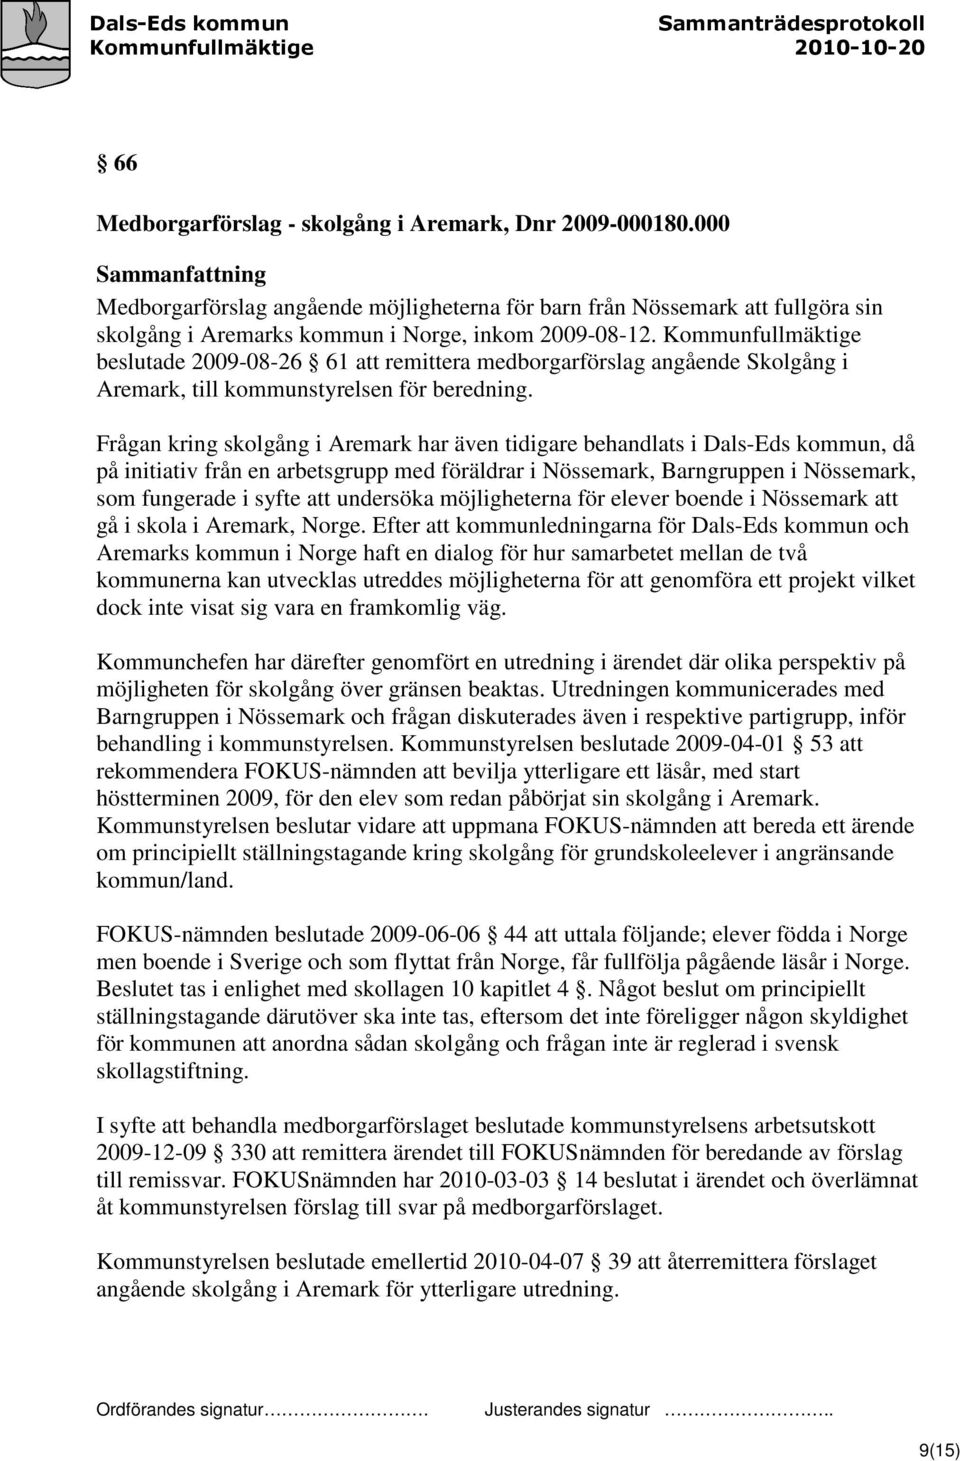 Kommunfullmäktige beslutade 2009-08-26 61 att remittera medborgarförslag angående Skolgång i Aremark, till kommunstyrelsen för beredning.